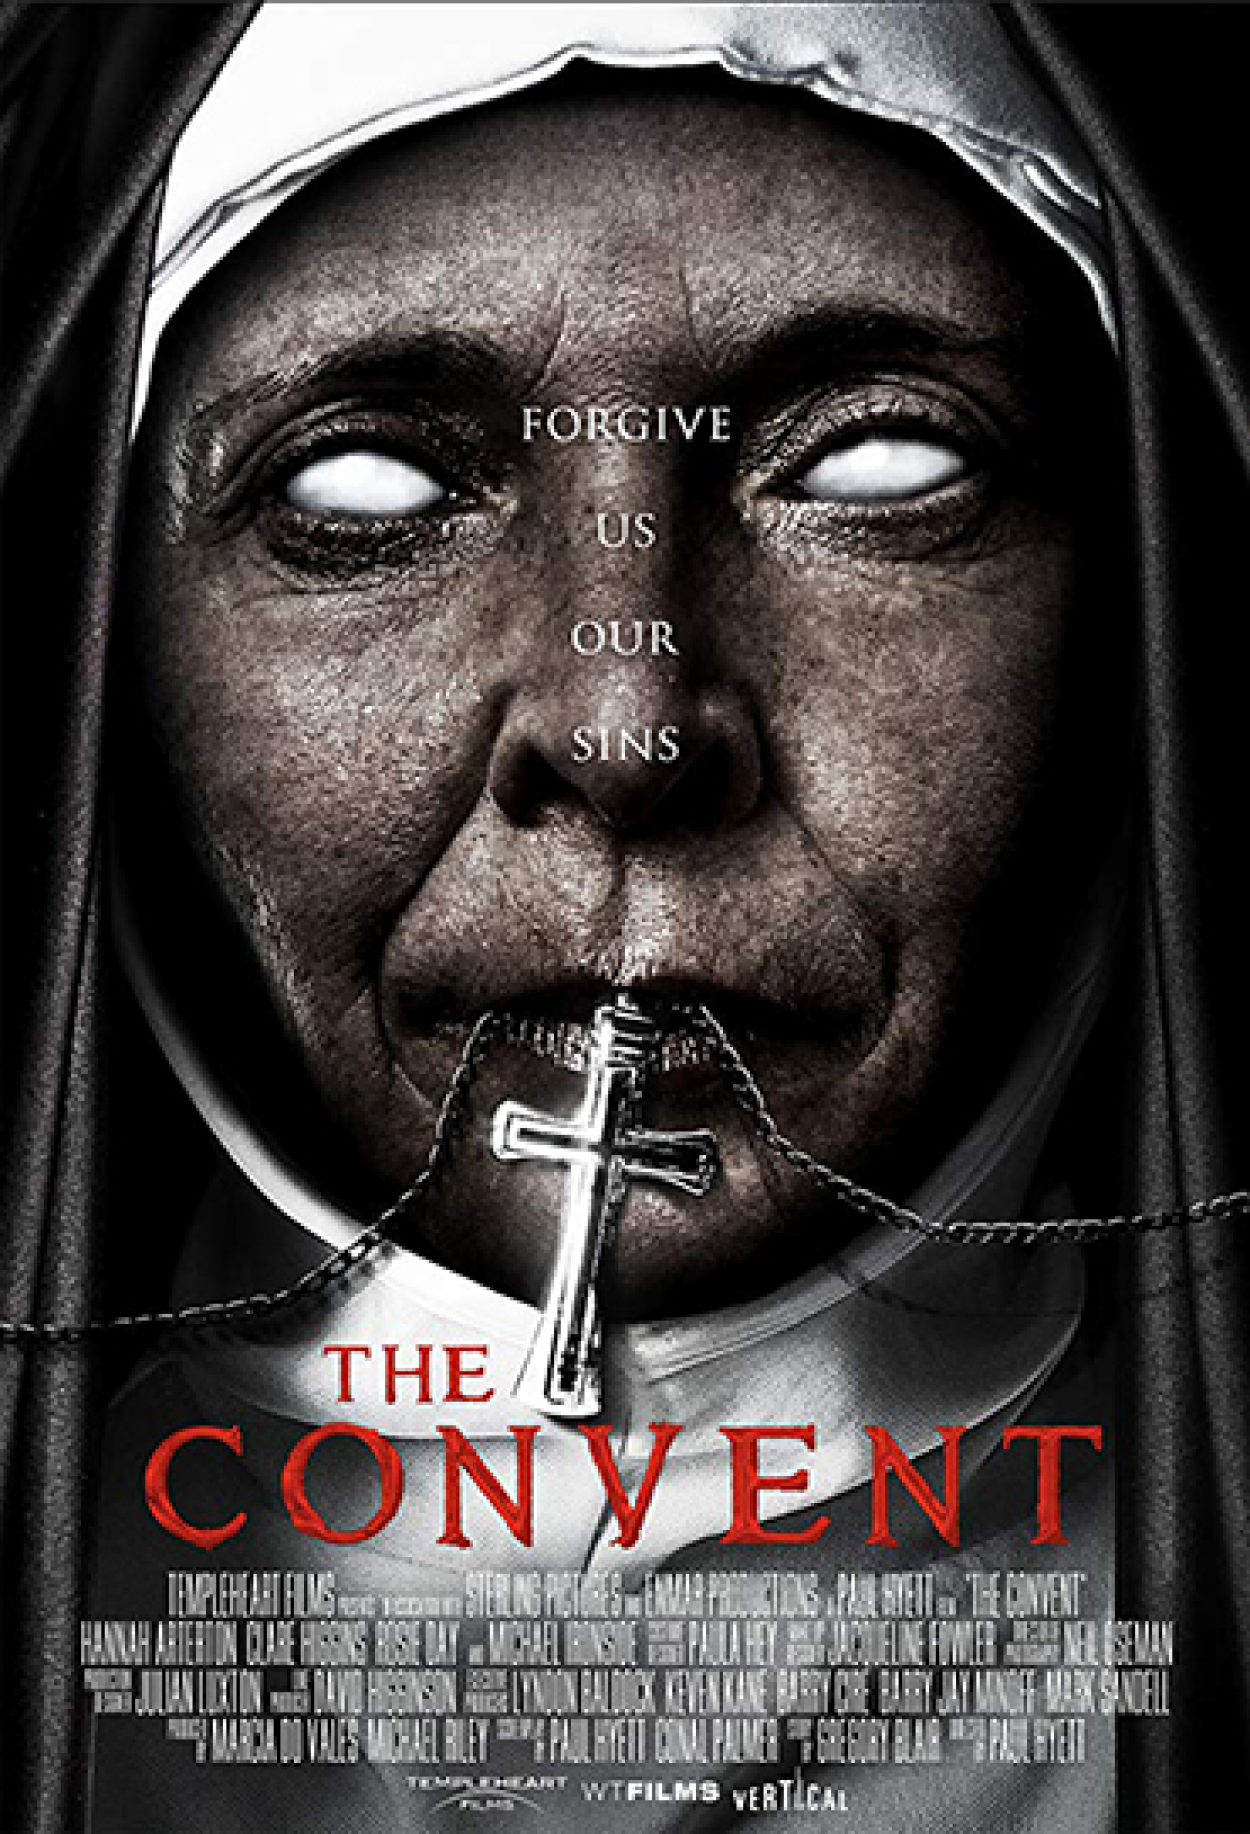 Filme de terror O Convento chega no dia 27 de julho nos cinemas